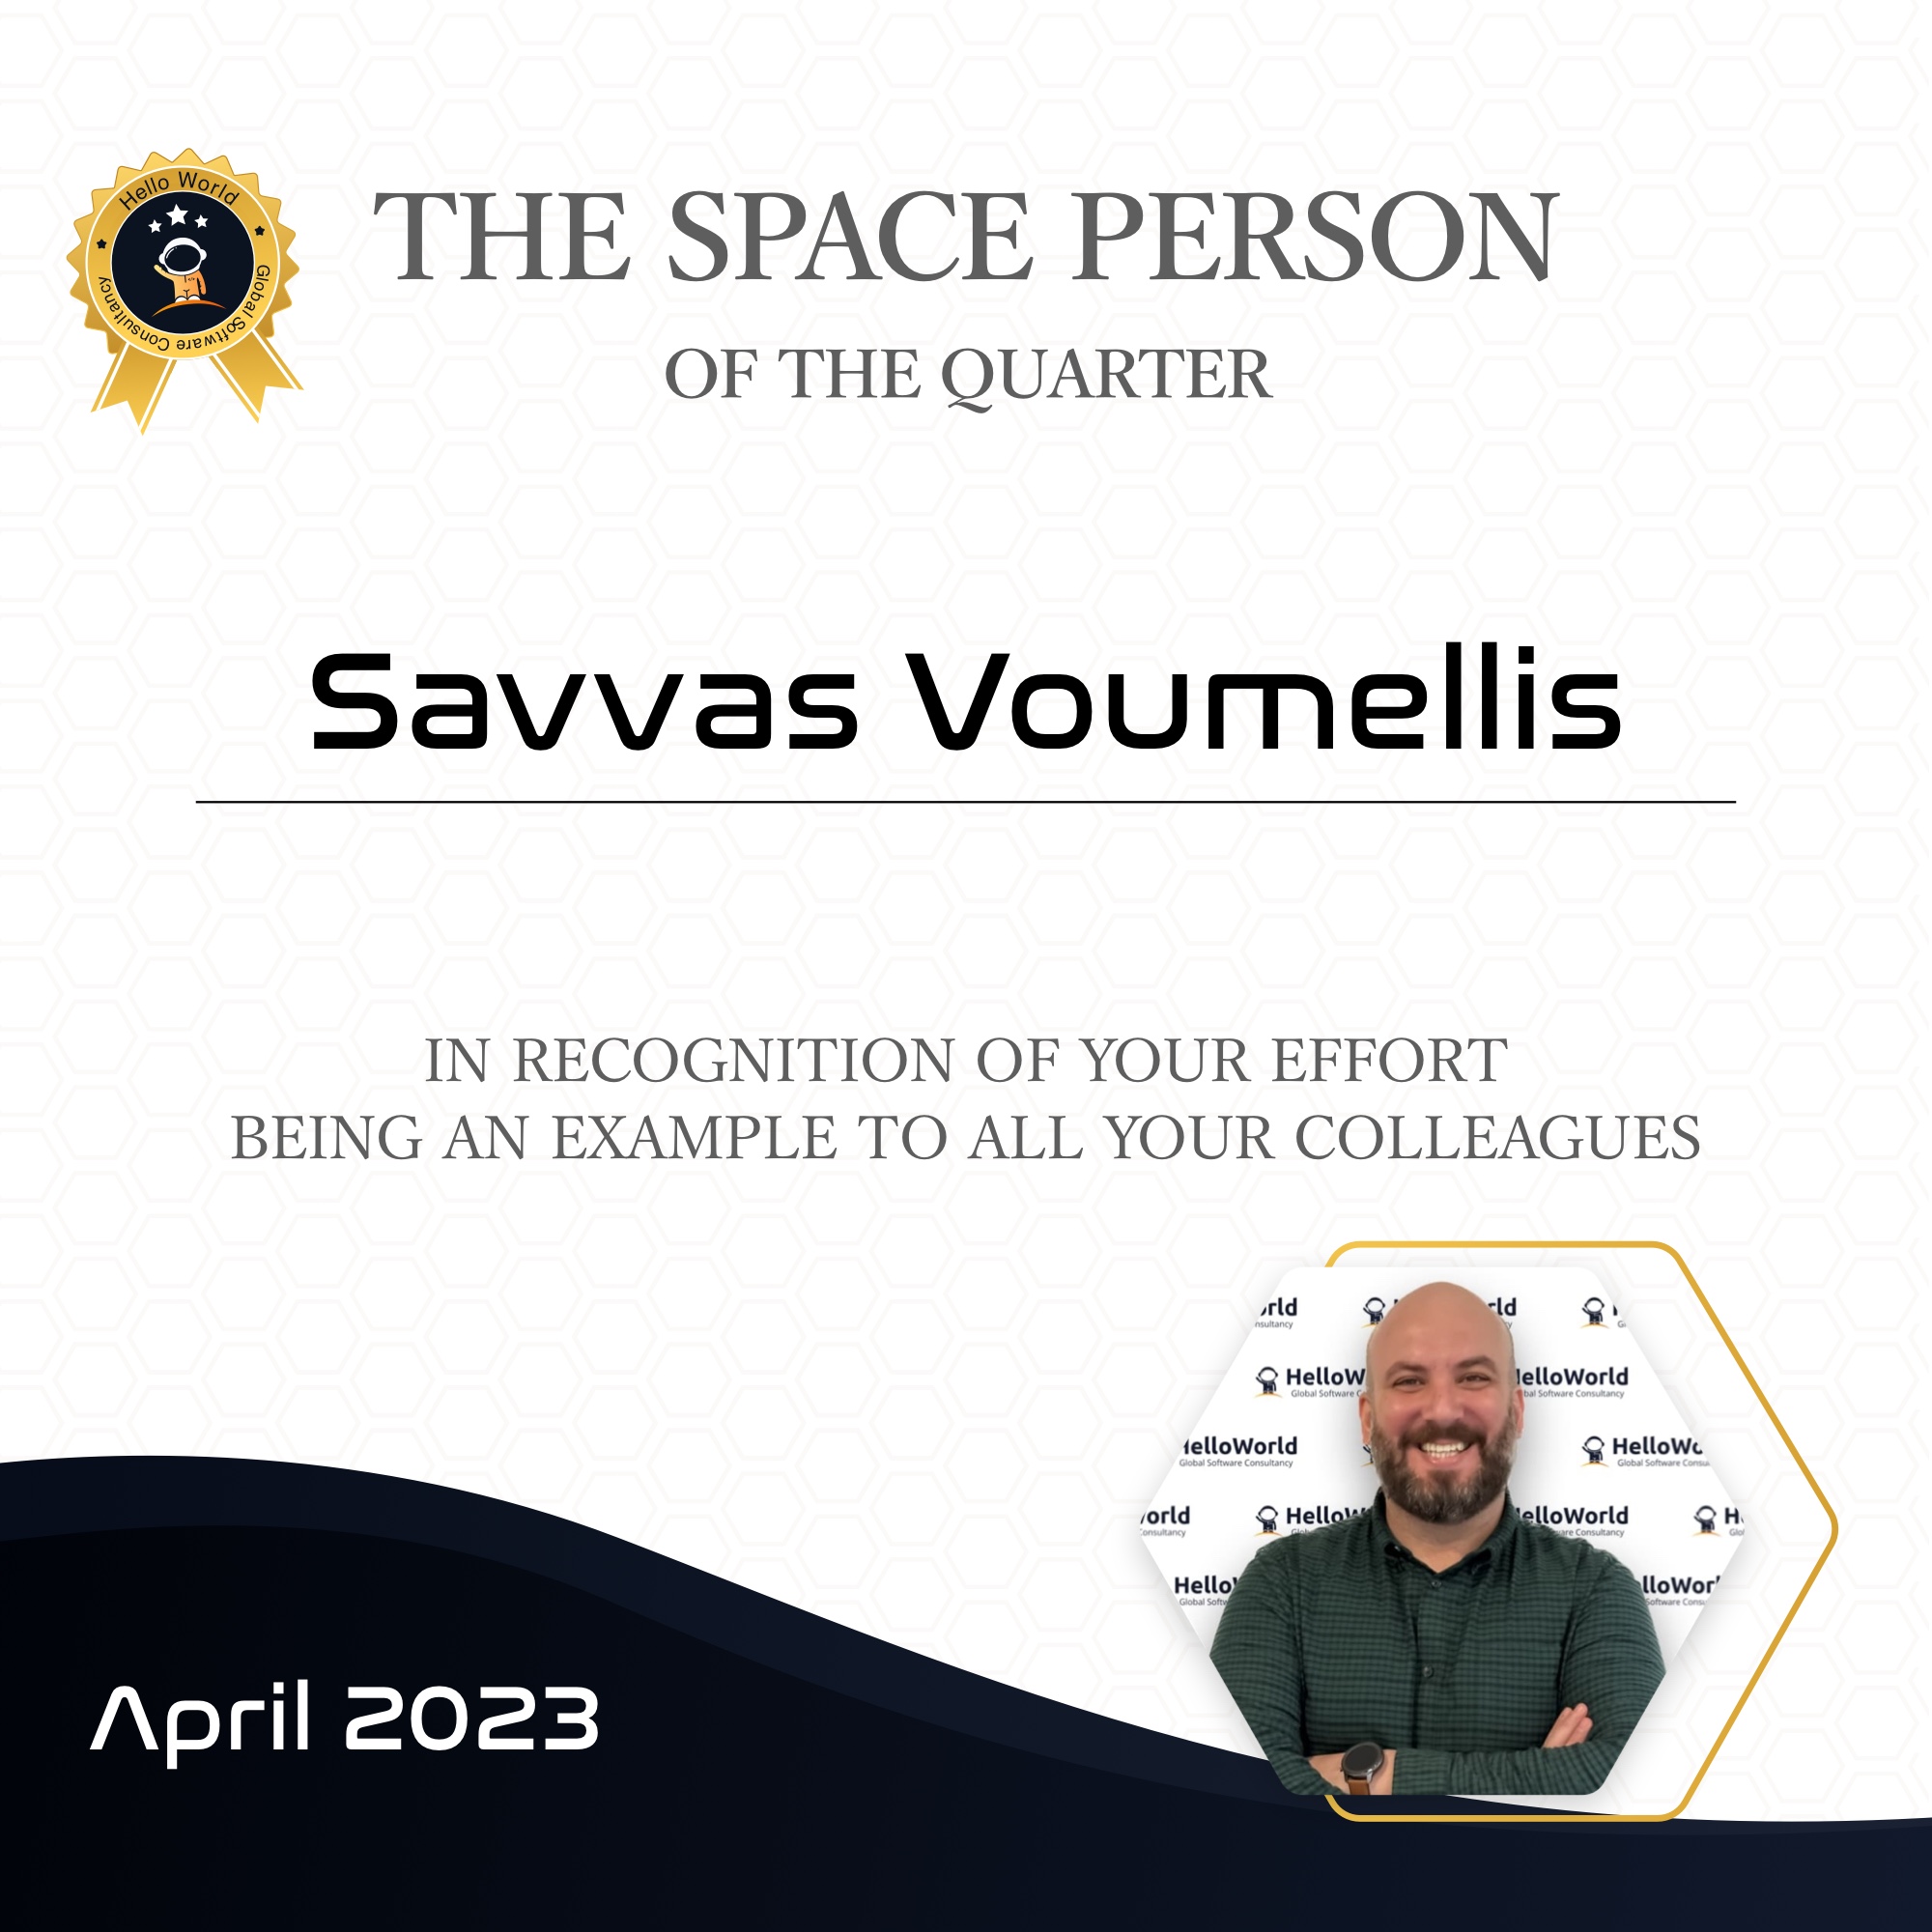 Space Person, 1st quarter 2023